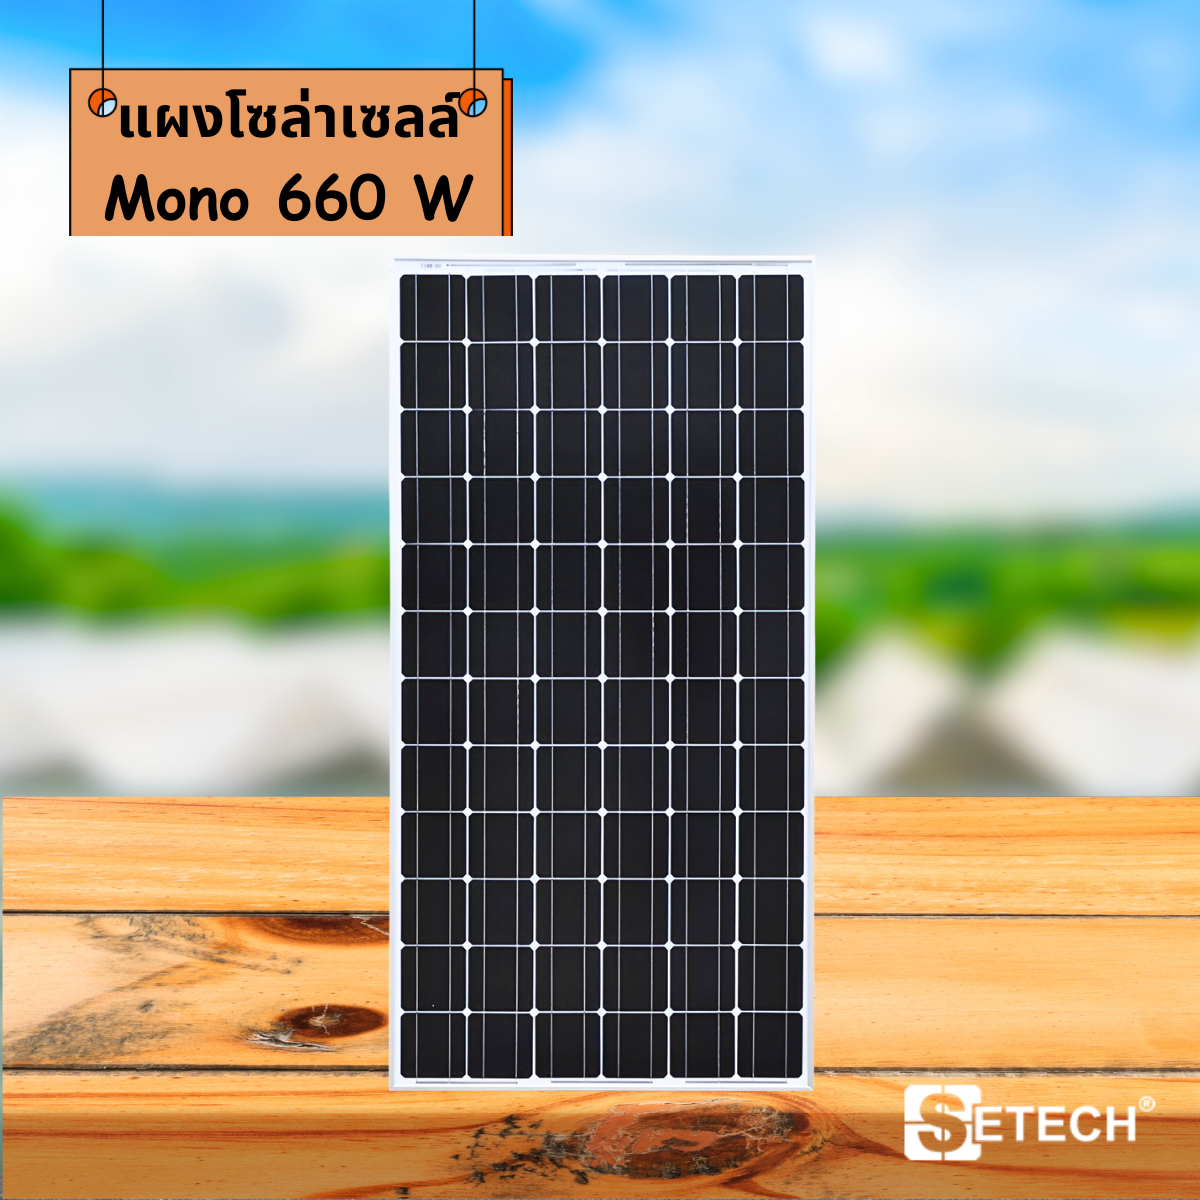 Solar panels Model Mono 660 W SETECH-SC-05